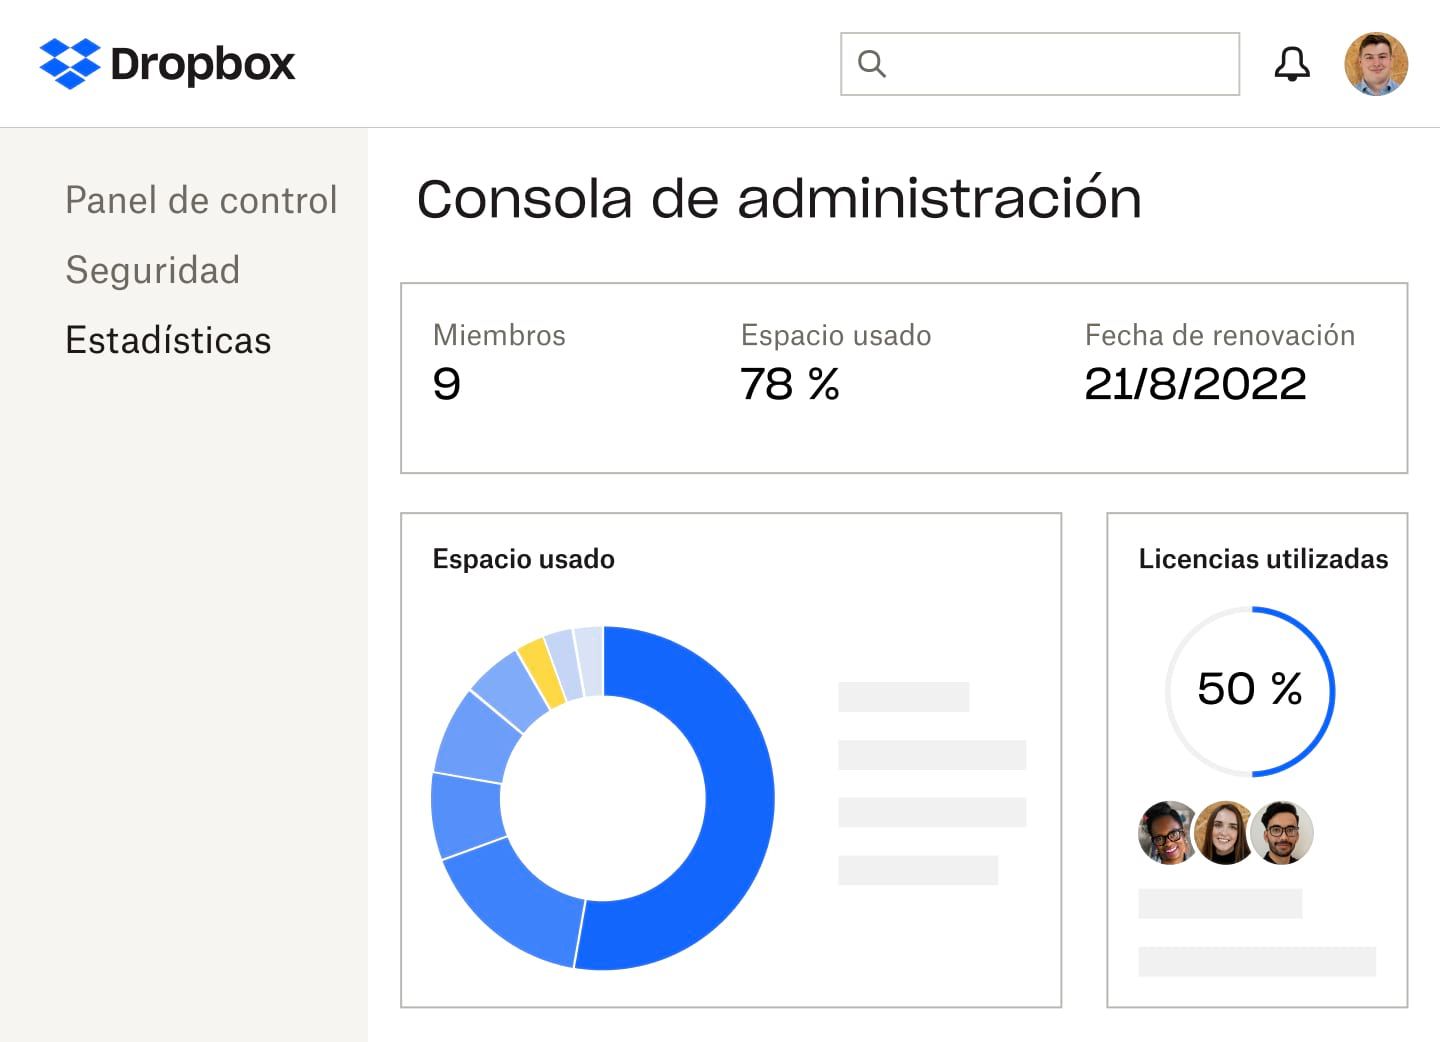 La consola de administración de Dropbox que muestra la cantidad de miembros, el porcentaje de espacio de almacenamiento y de licencias utilizado, la fecha de renovación de la suscripción y un gráfico circular azul y amarillo del espacio empleado